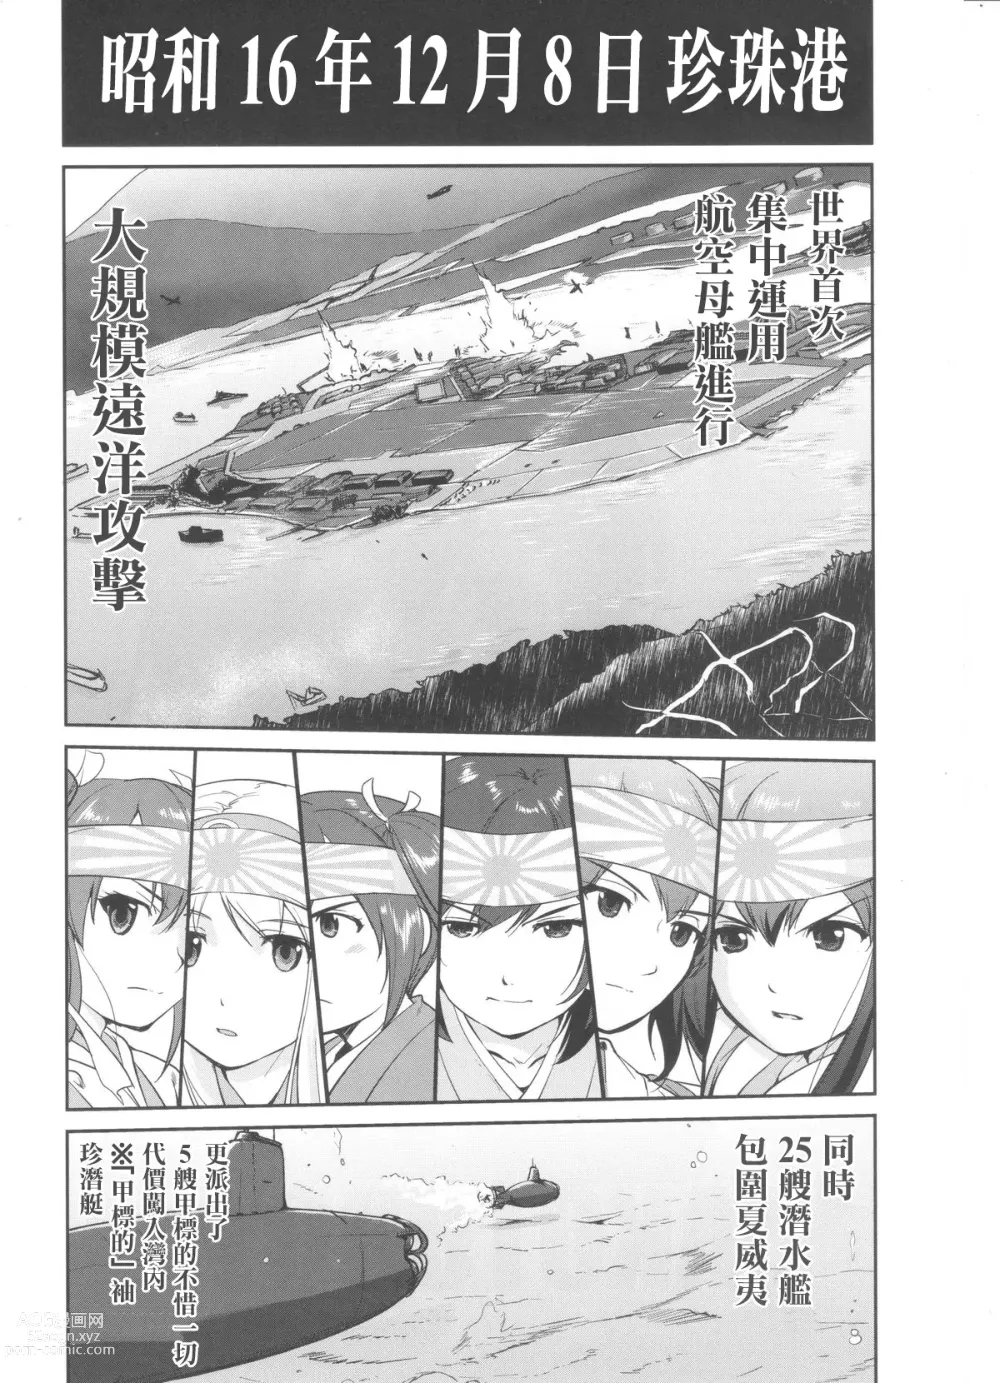 Page 3 of doujinshi Teitoku no Ketsudan MIDWAY